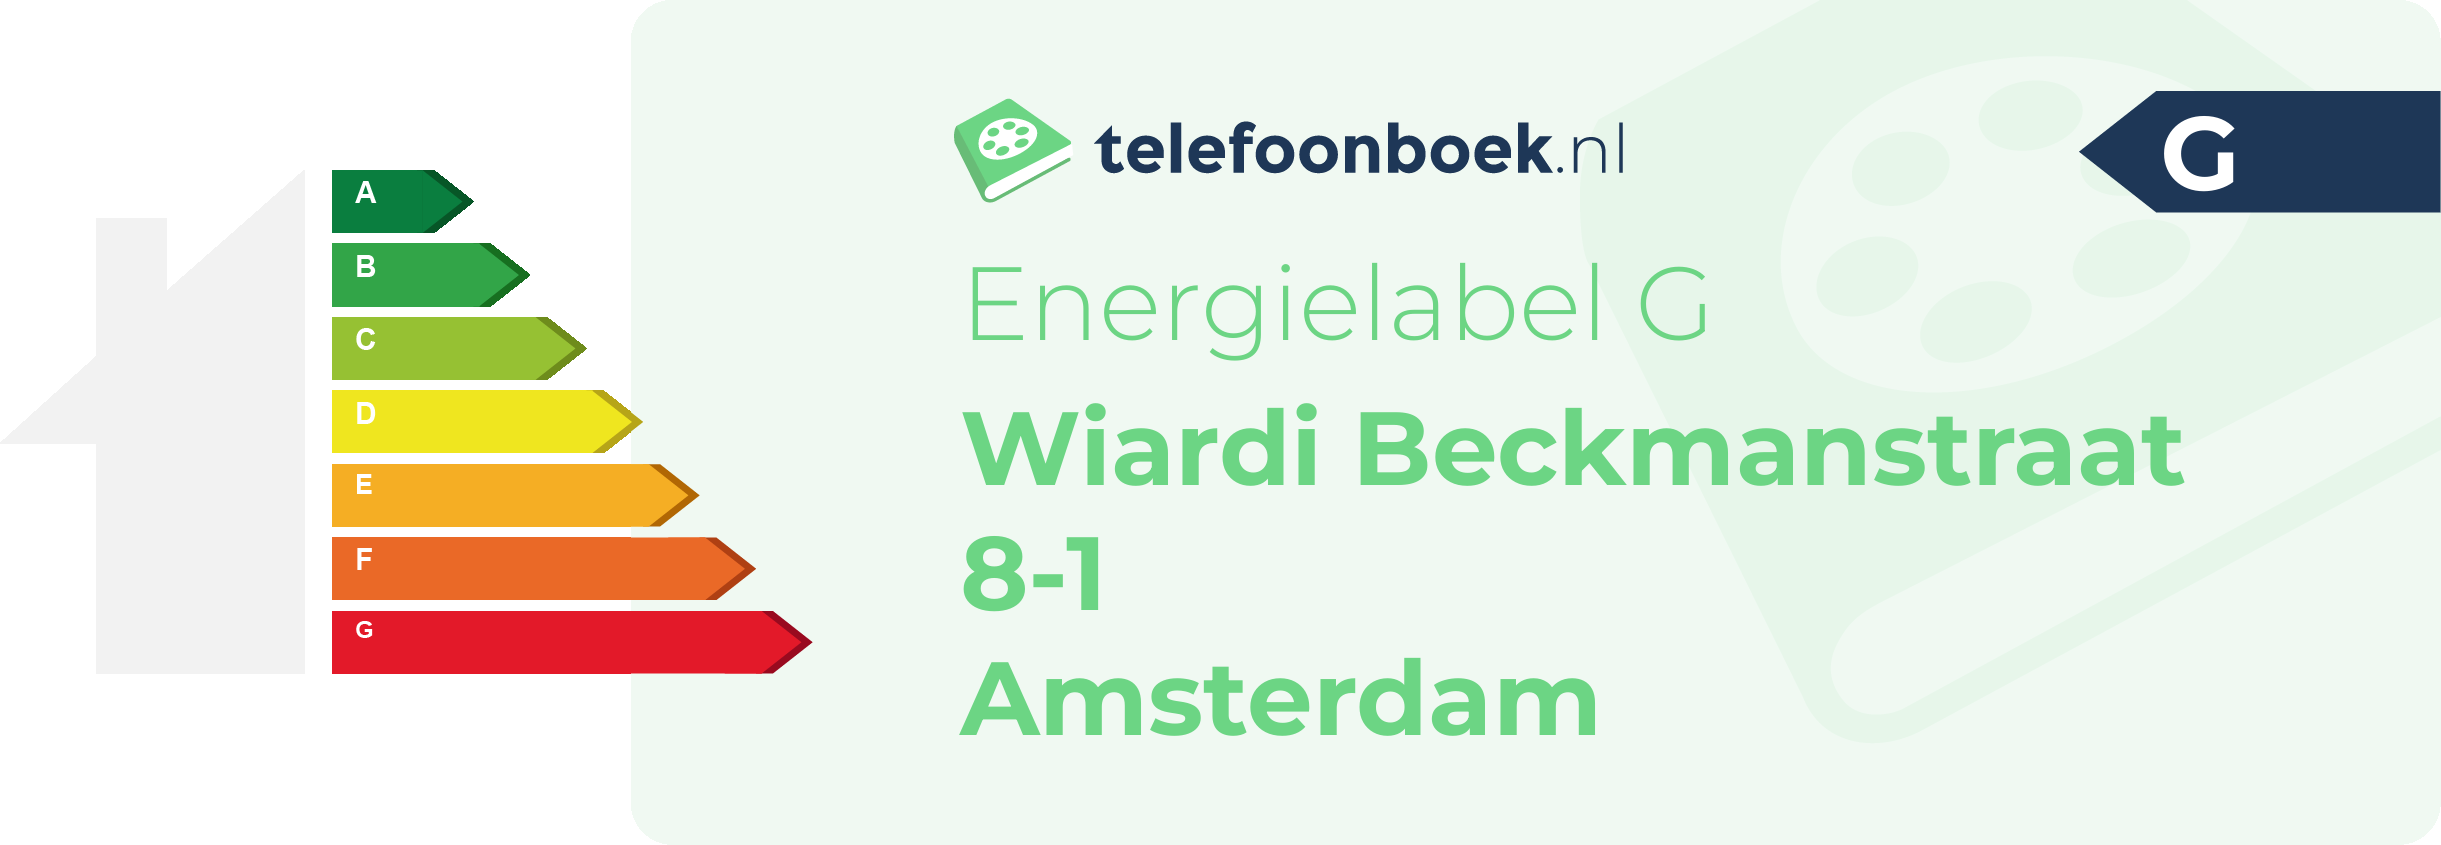 Energielabel Wiardi Beckmanstraat 8-1 Amsterdam